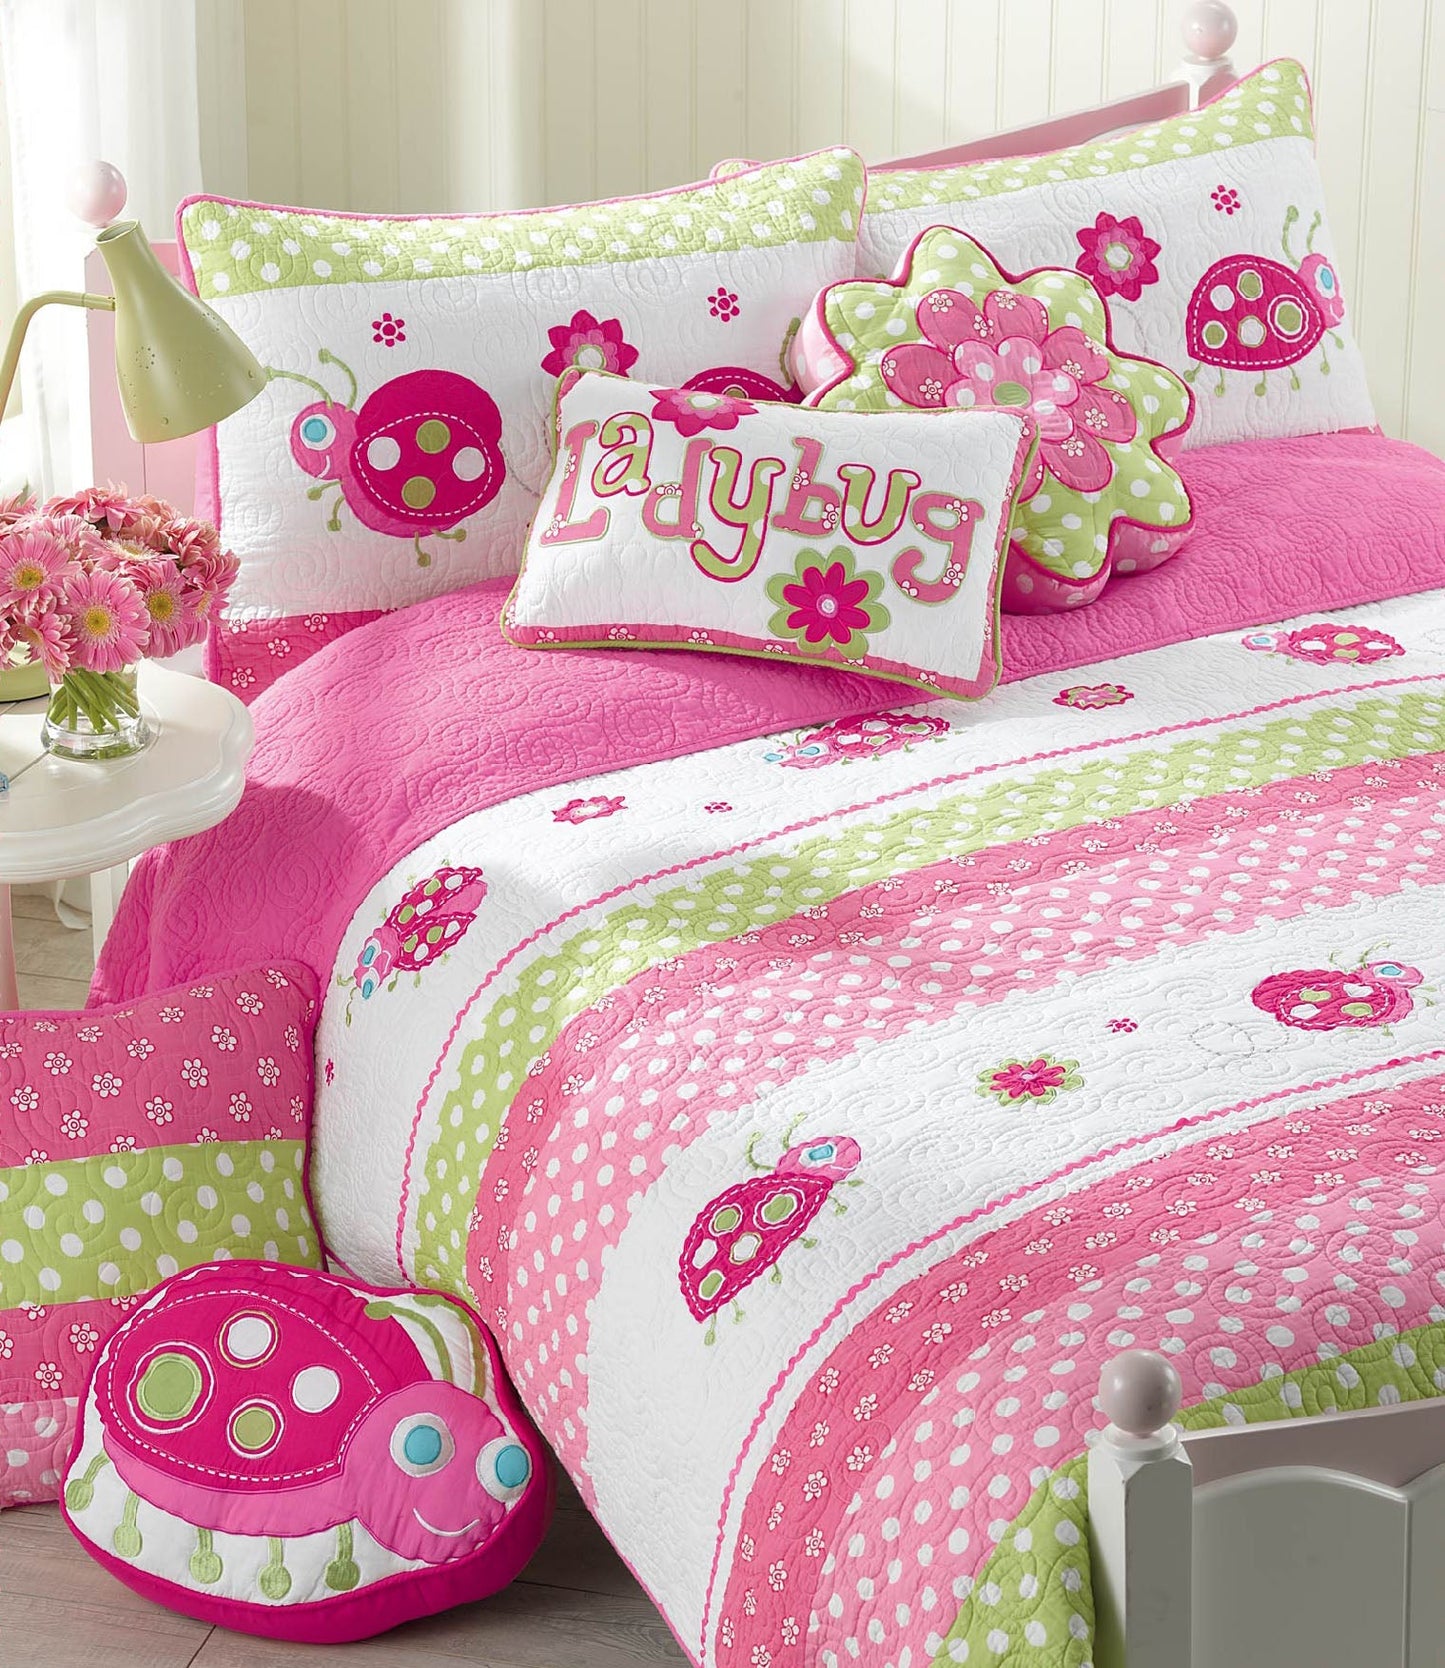 Pink Ladybug Dot Rectangular Decor Throw Pillow